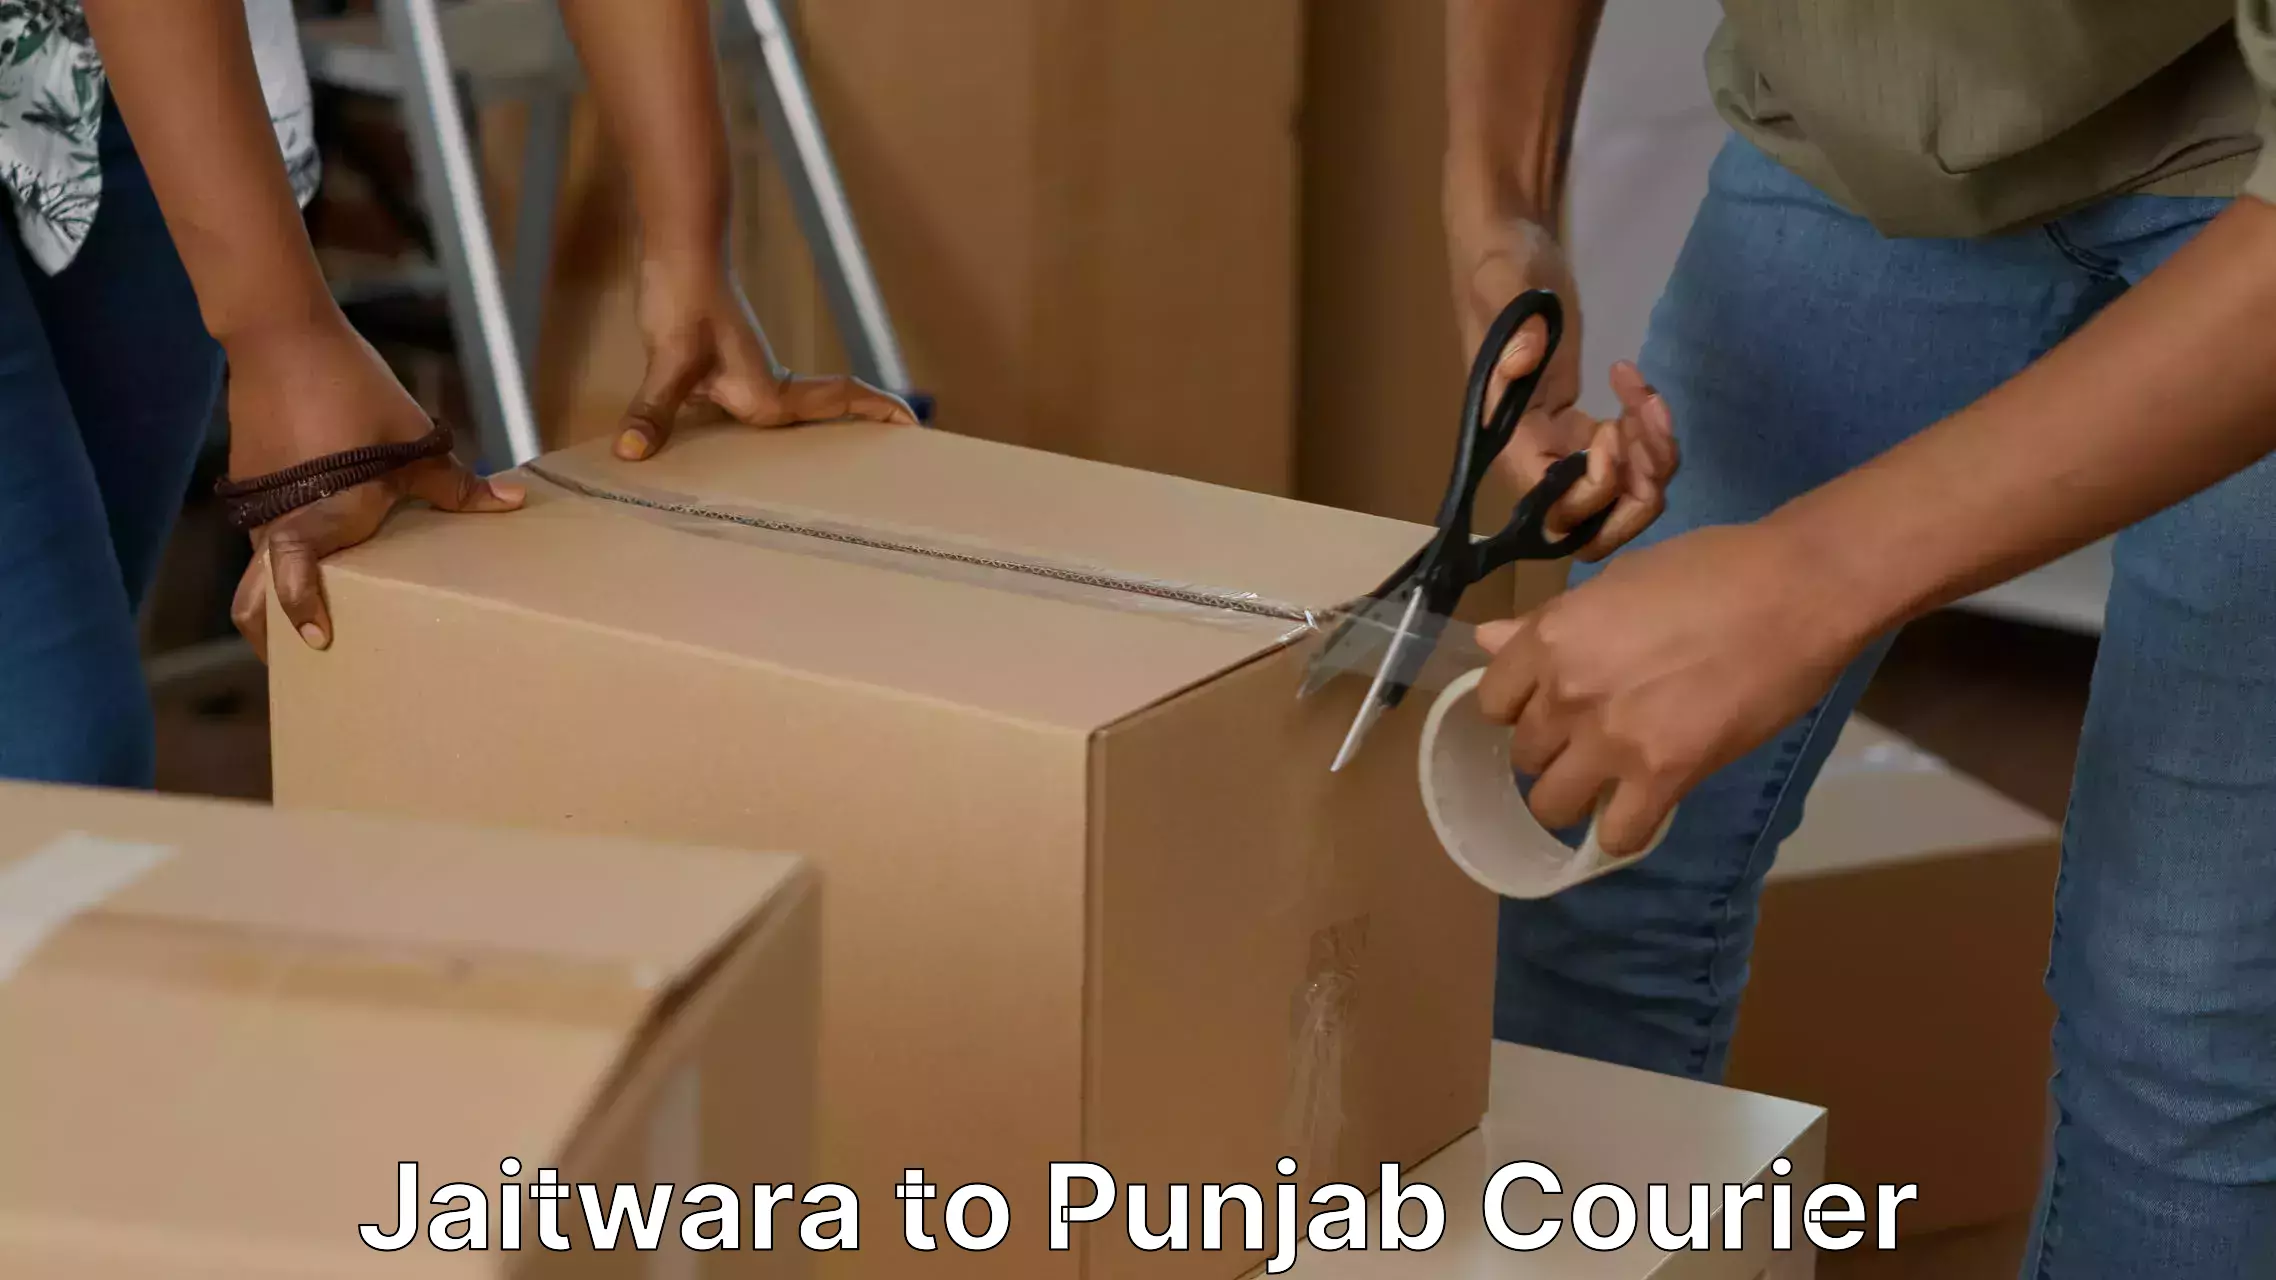 Stress-free household shifting Jaitwara to Punjab